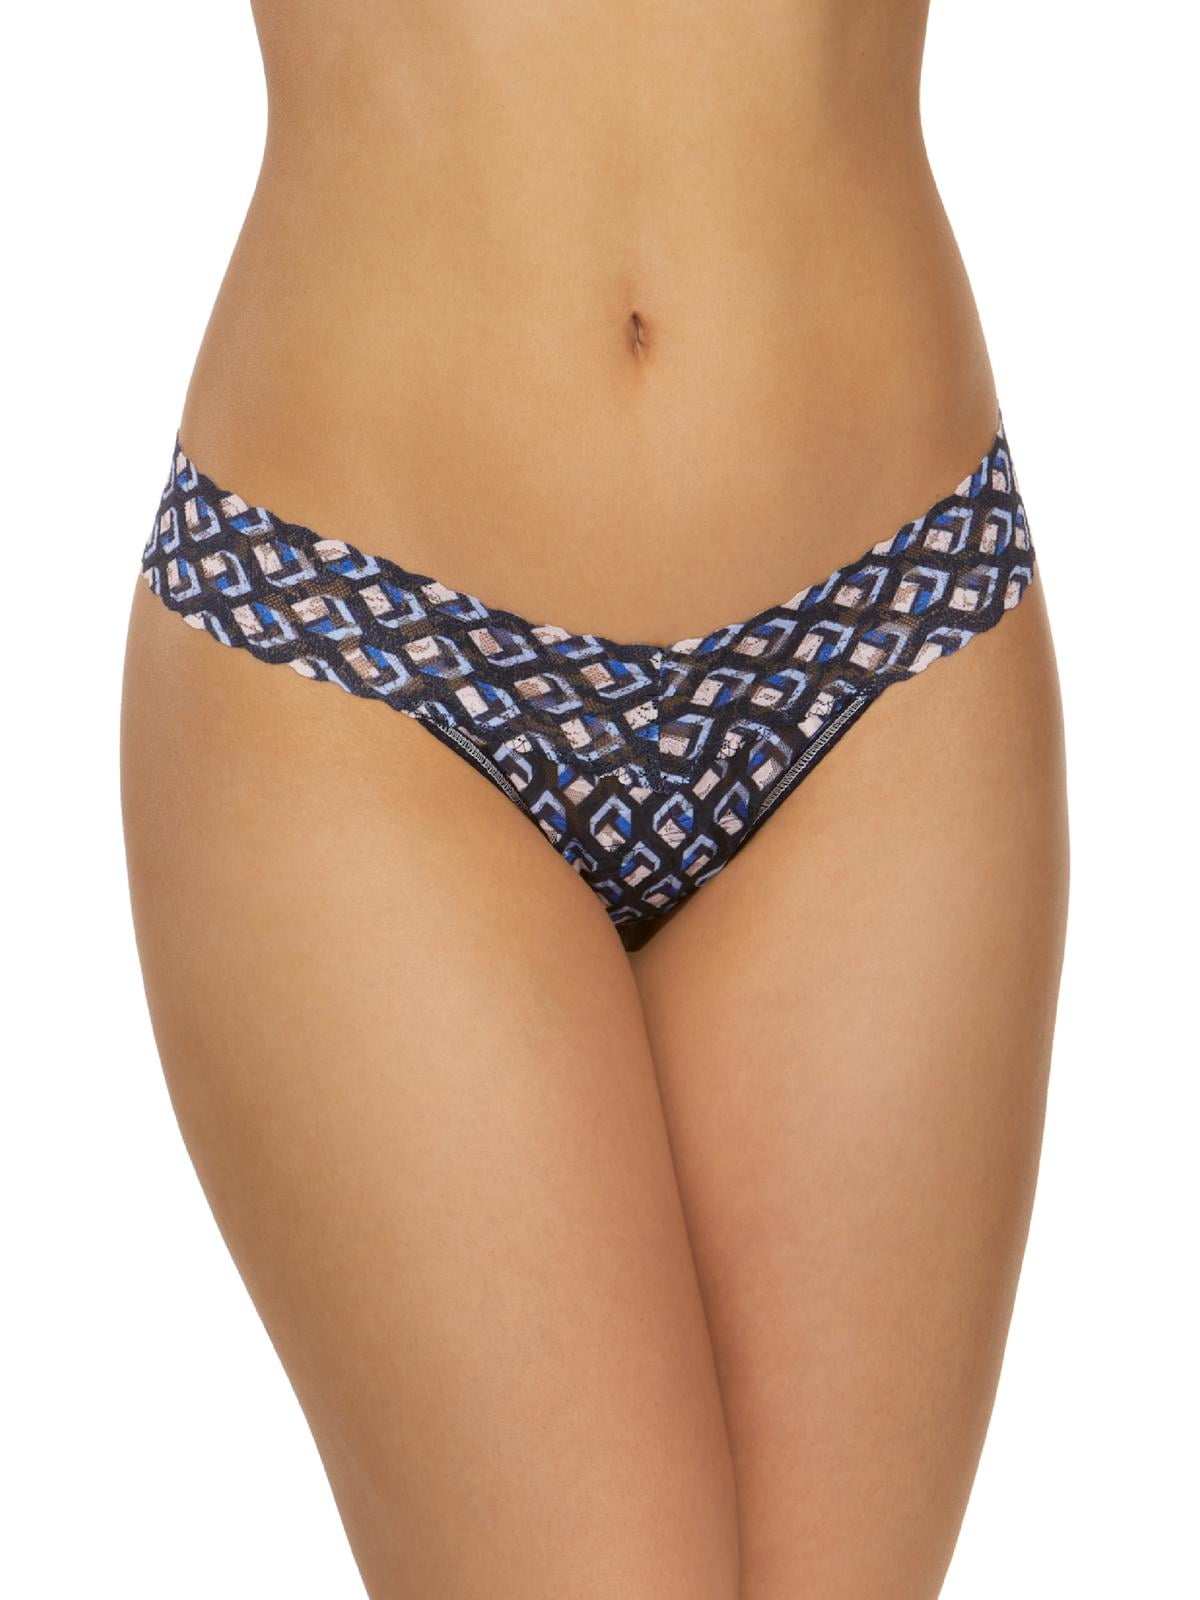 Women's High Waist Lace G-string Briefs Panties Underwear Thong Lingerie-Knicker